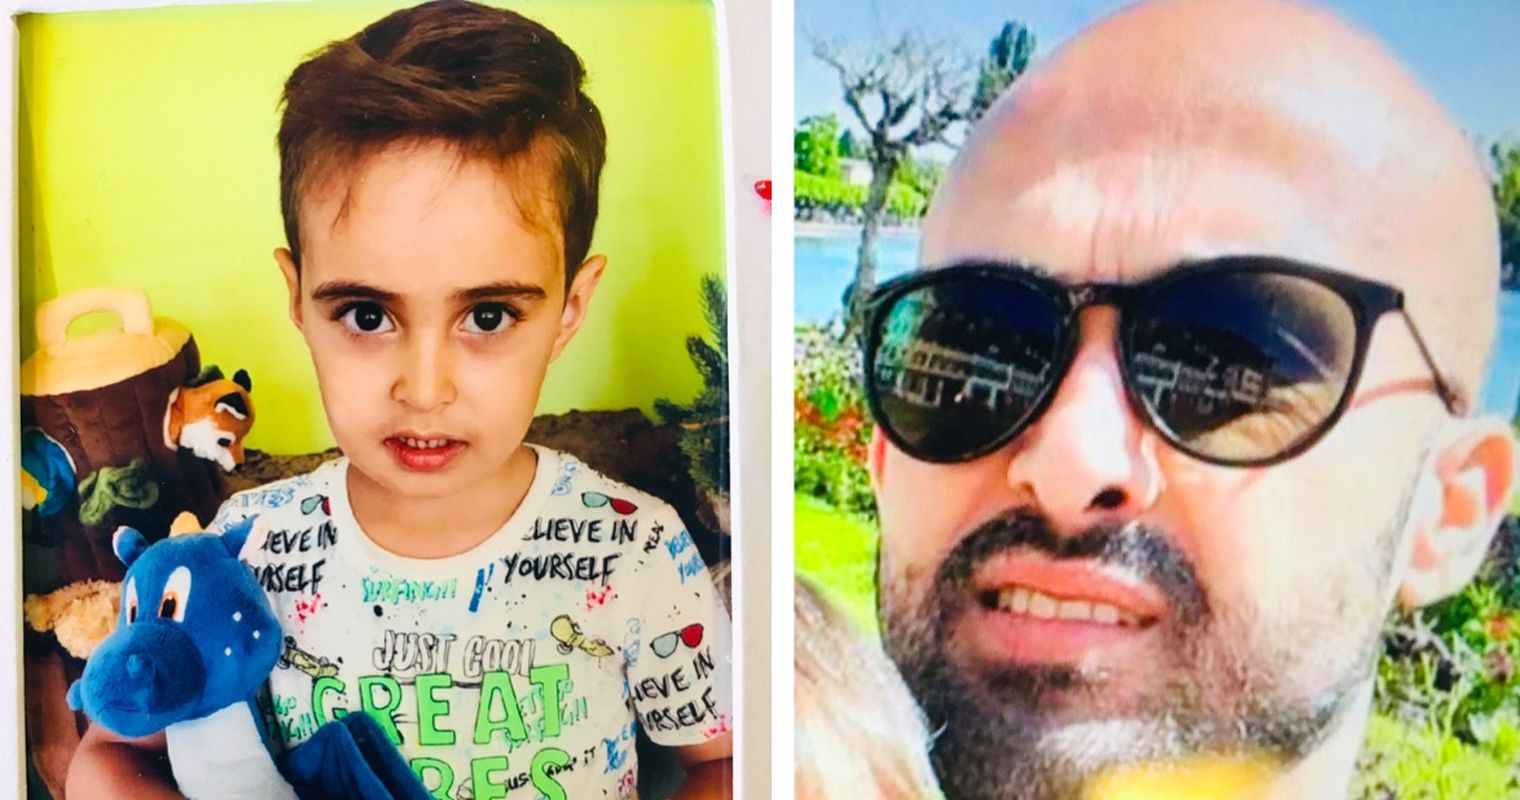 Vater und Sohn gesucht: Zuger Polizei setzt Belohnung aus